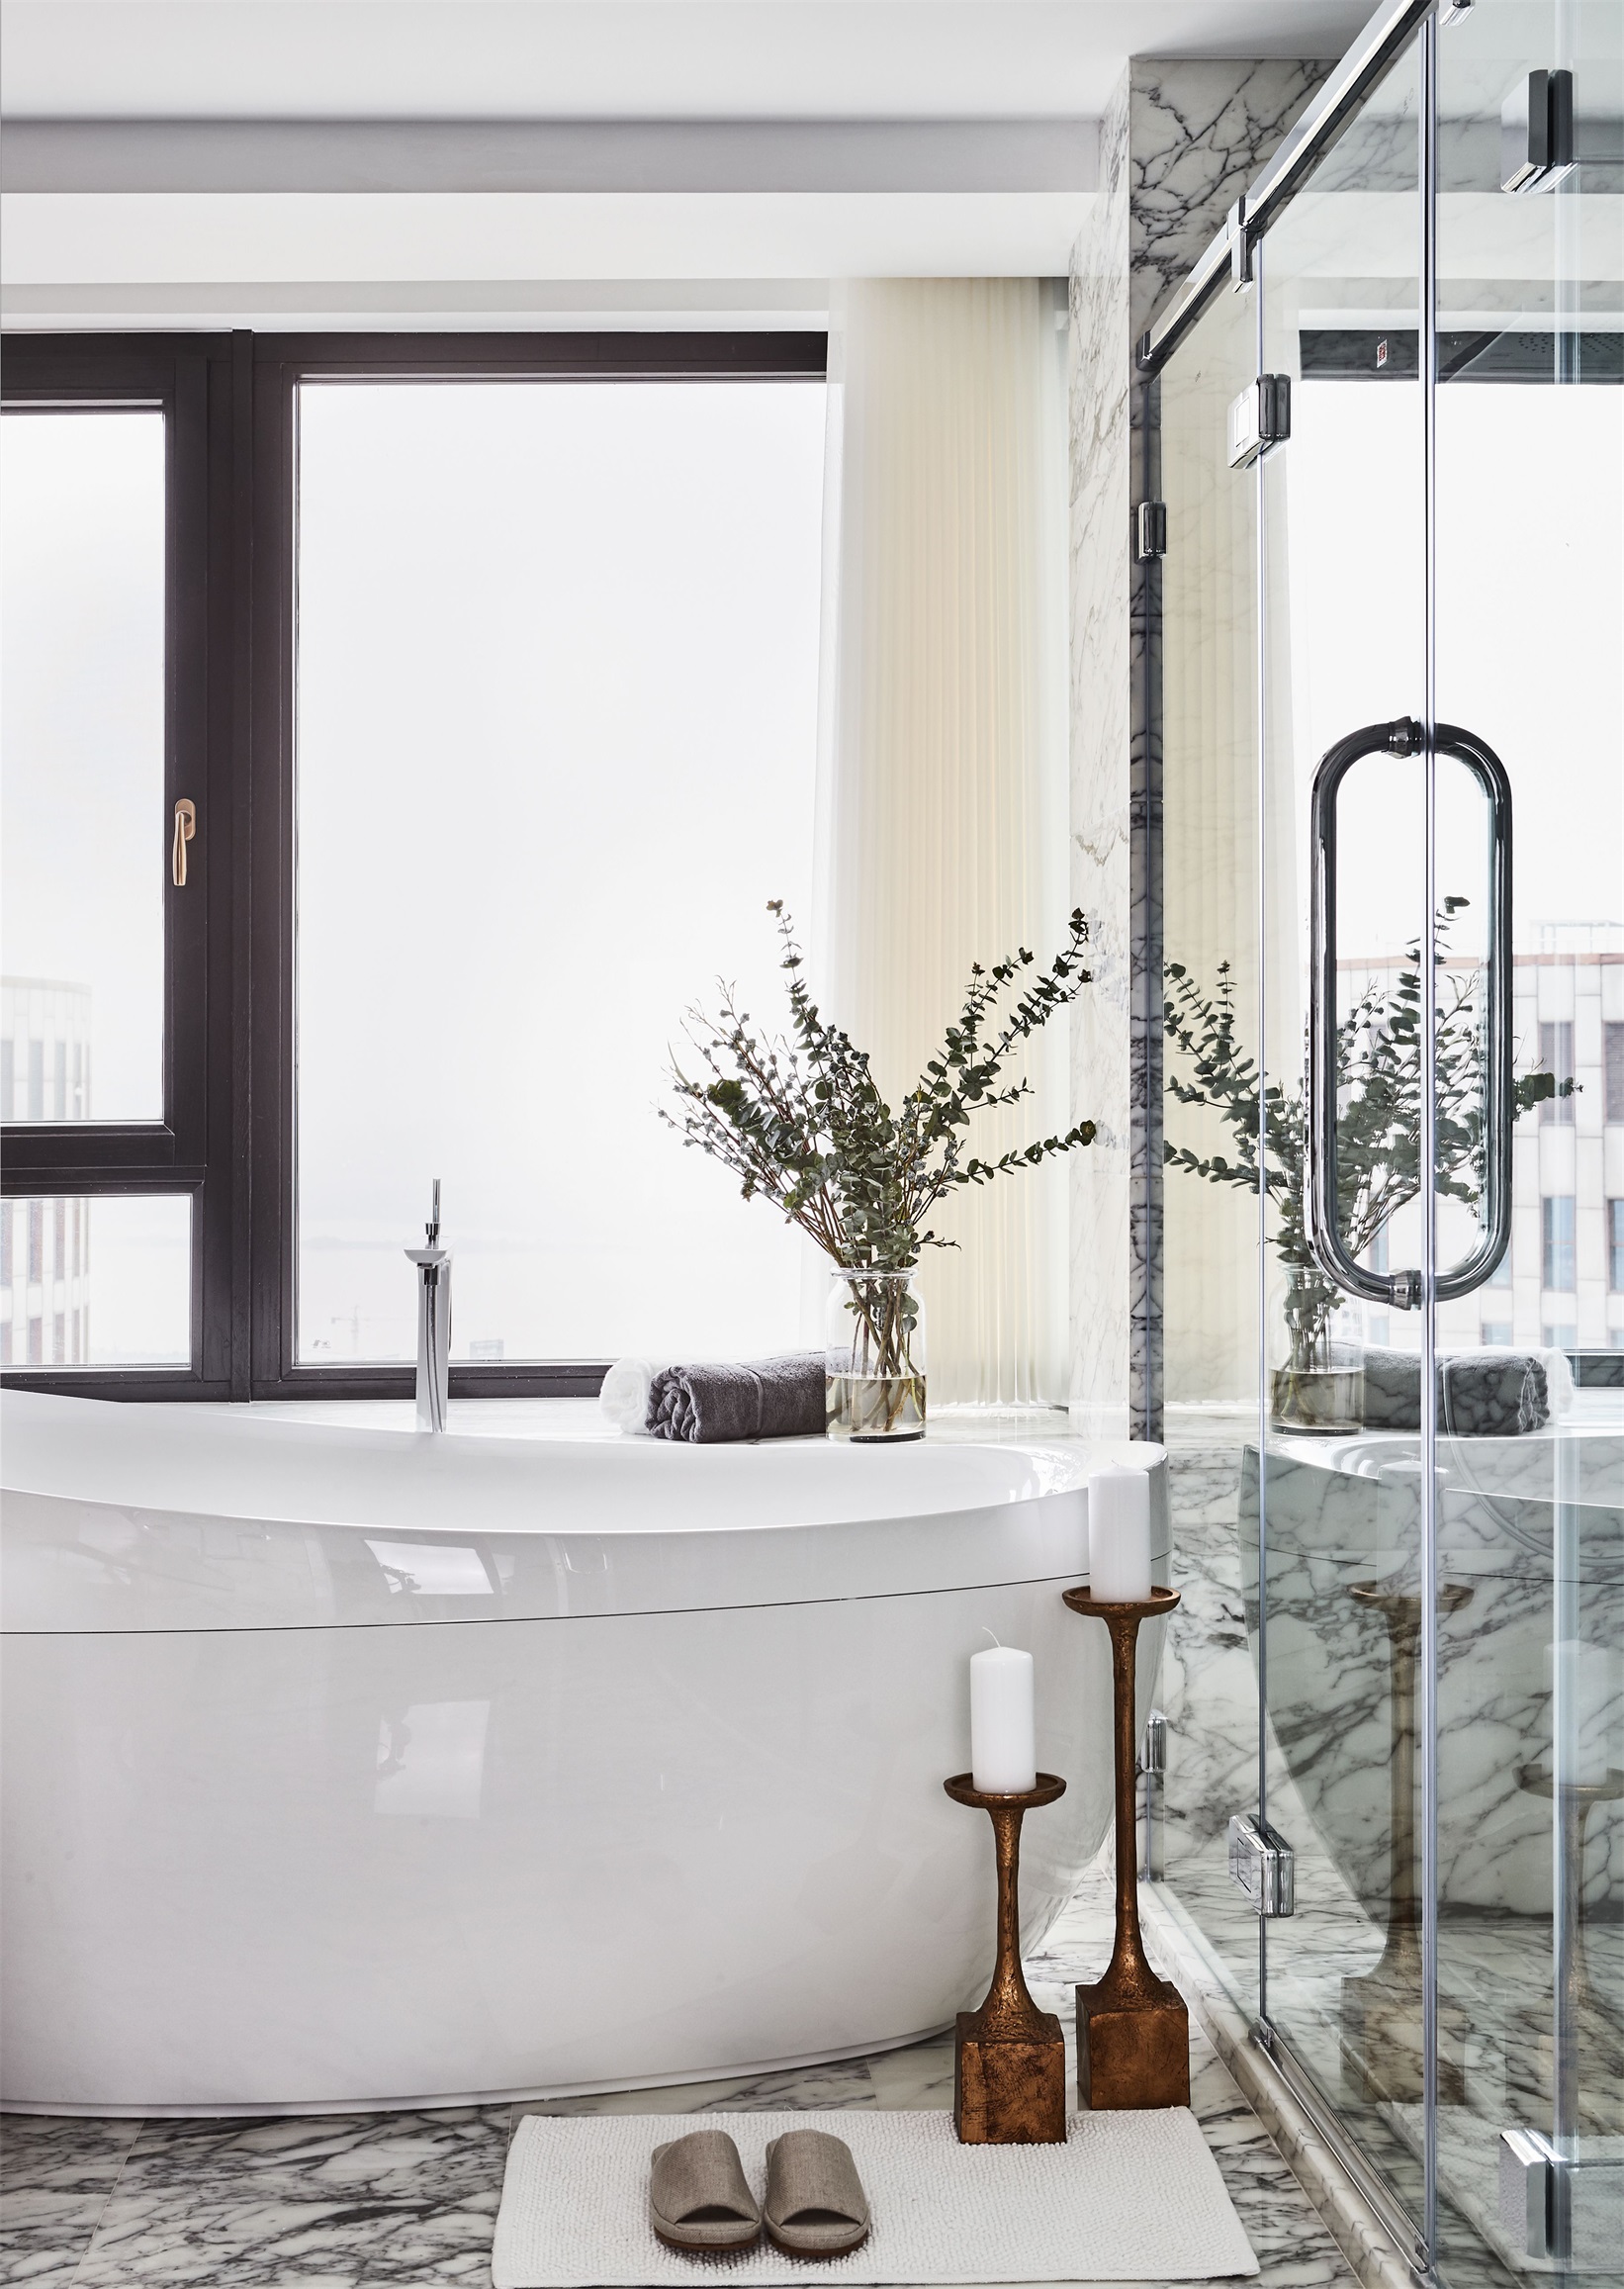 卫浴空间浴缸与淋浴房同时兼具，局部精致软装打破空间平淡，提升了质感。 